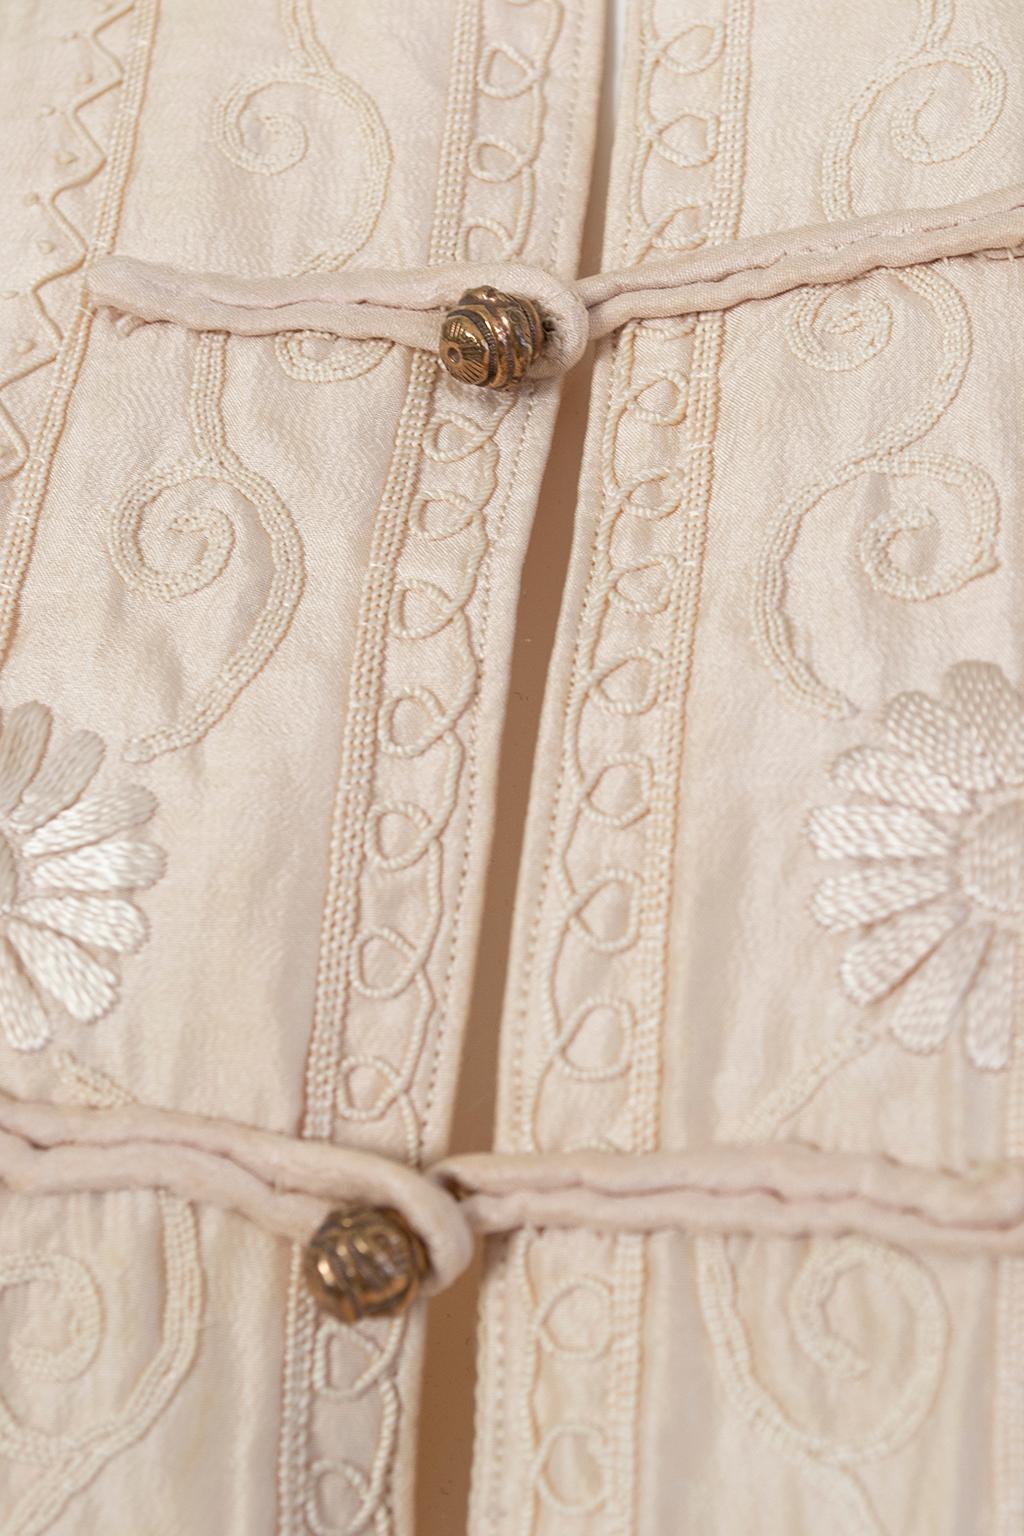 Robe édouardienne rose pâle en soie de Canton brodée (taille L/S), années 1900 en vente 4